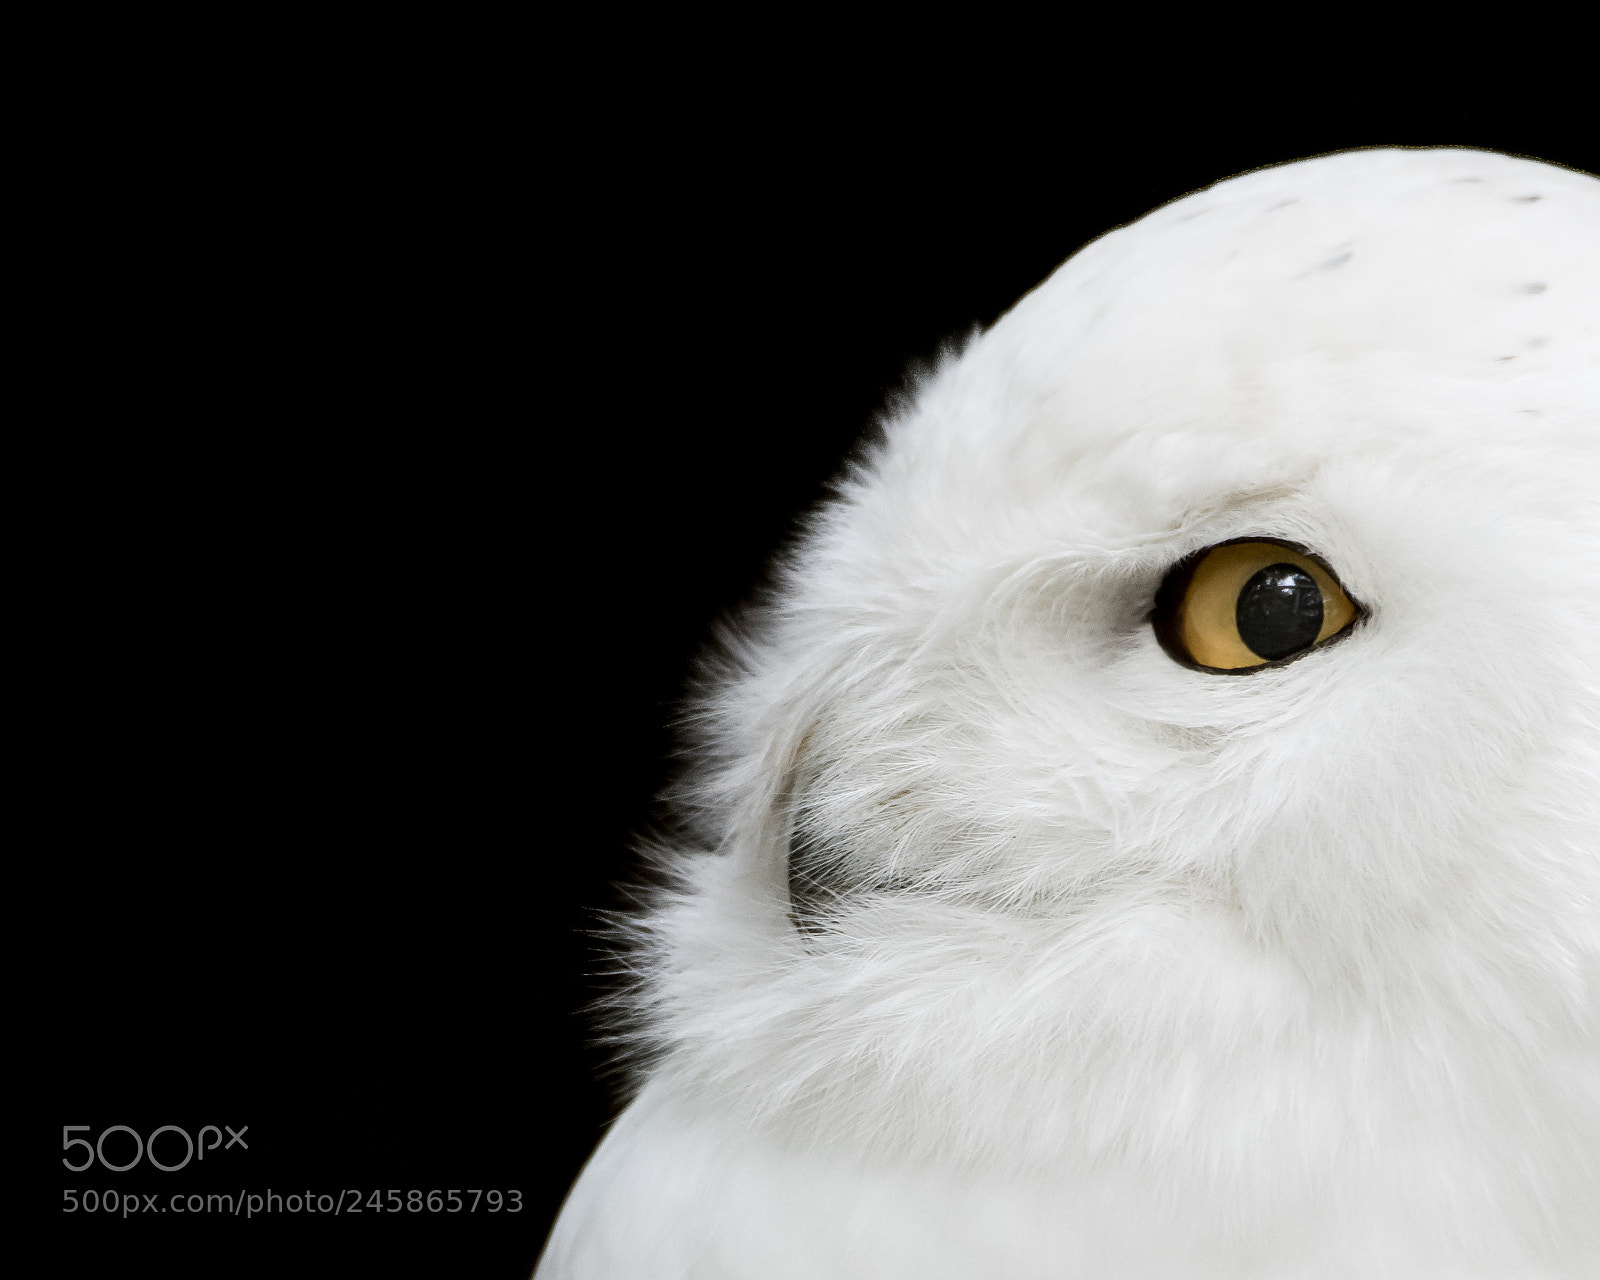 Nikon D810 sample photo. Snowy owl photography